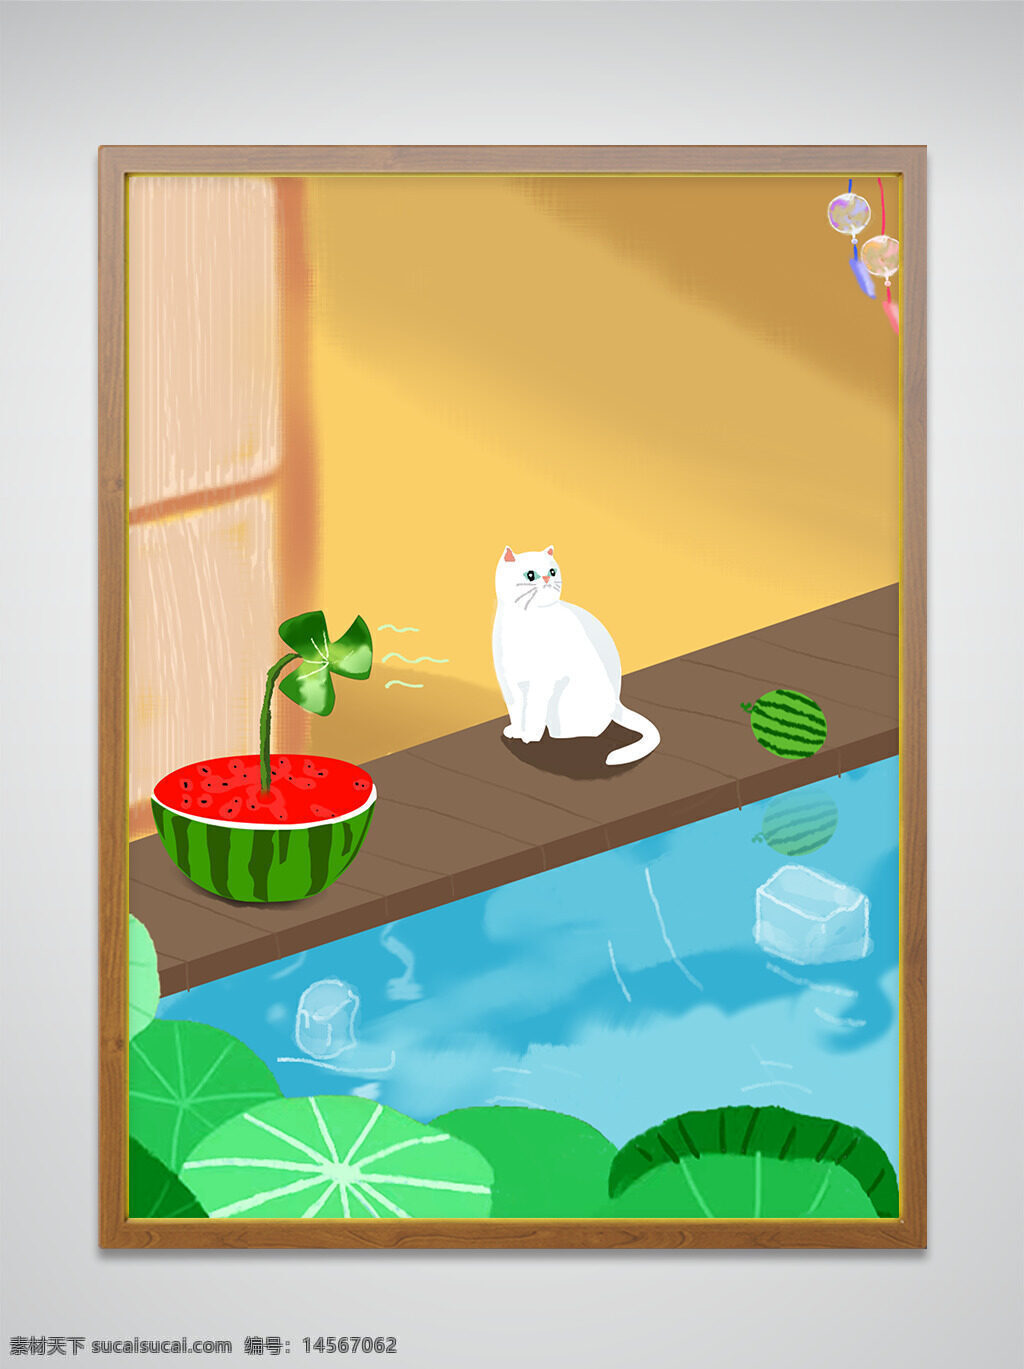 夏季 白猫 西瓜 风扇 荷叶 插画 简约 海报 风铃 冰块 凉爽 夏天